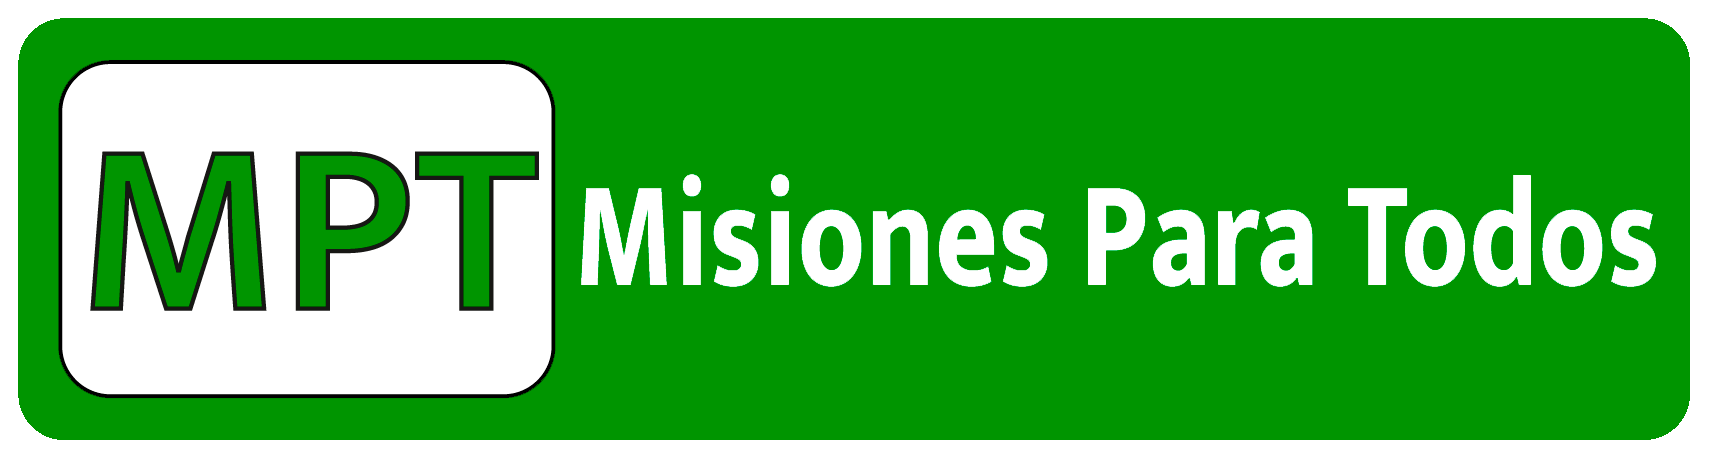 Misiones Para Todos